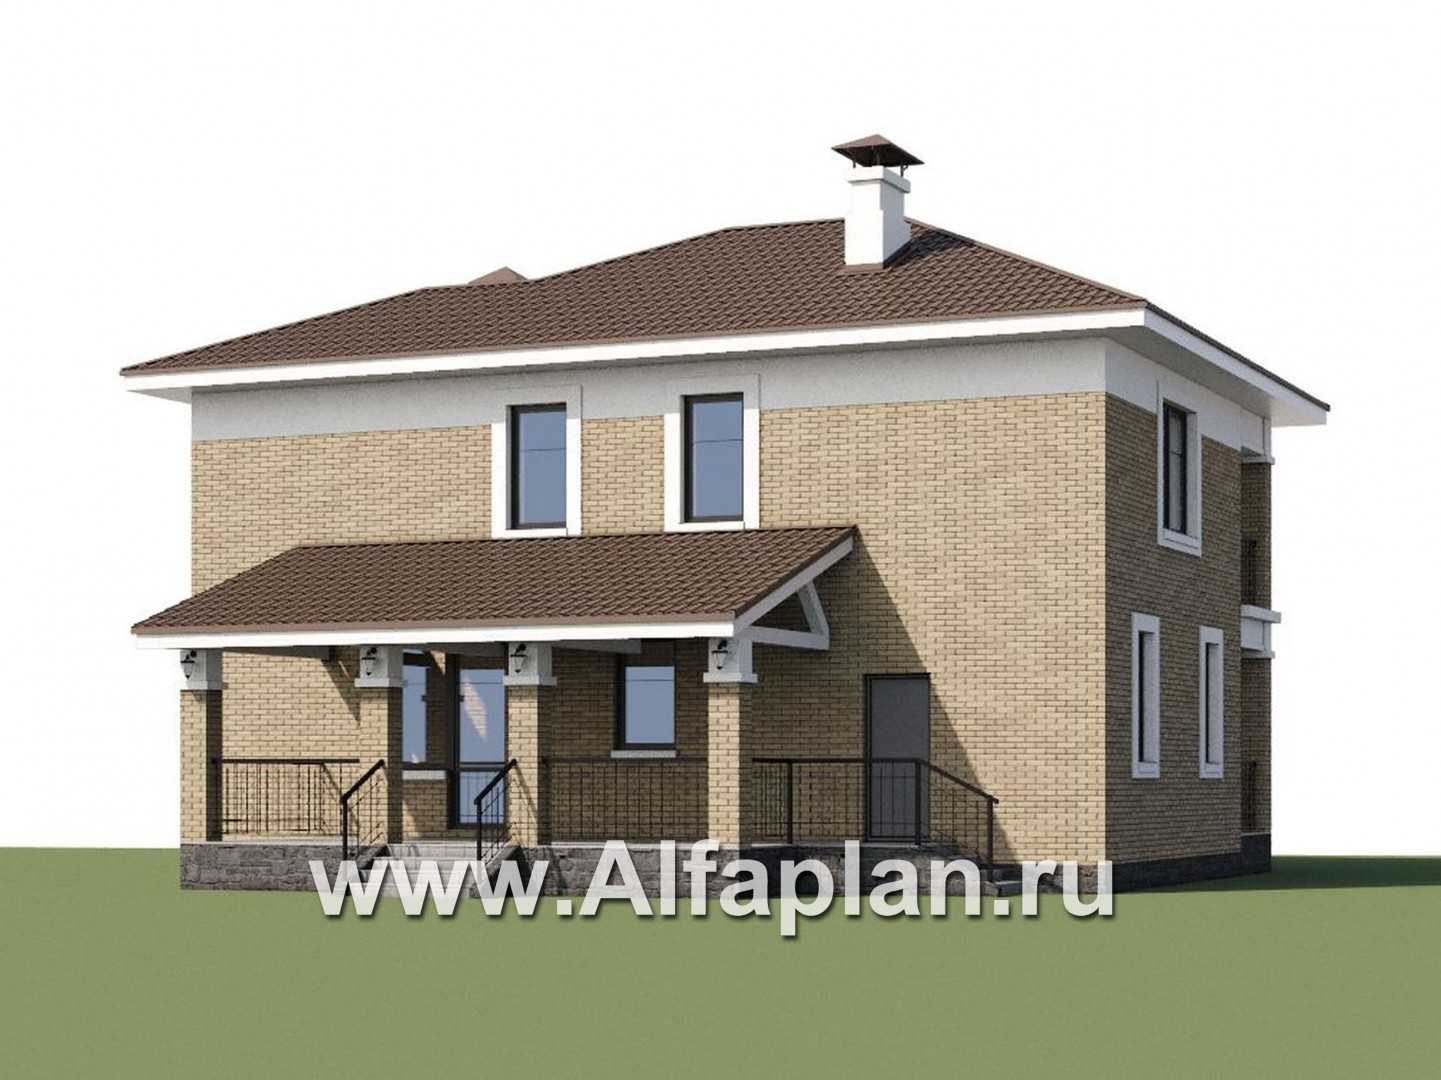 Проекты домов Альфаплан - «Топаз» - проект дома с открытой планировкой - дополнительное изображение №1